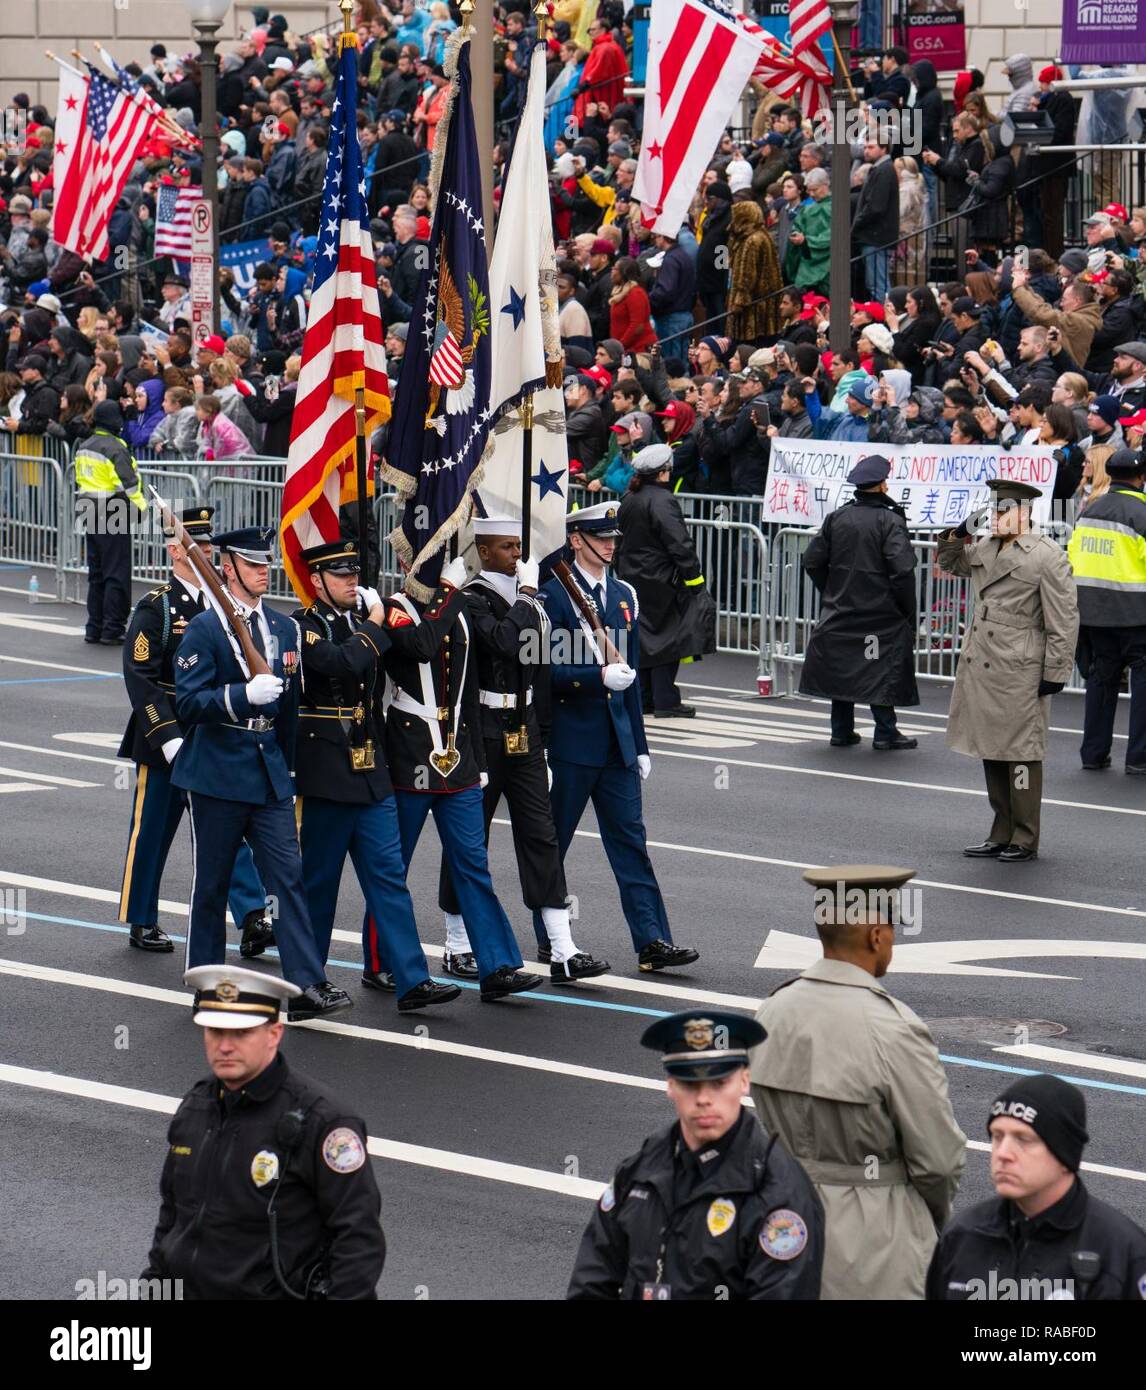 ASHINGTON, DC (Jan. 20, 2017) Die Streitkräfte Color Guard Märsche auf der Pennsylvania Avenue in Washington, D.C. zur Unterstützung der 58th Presidential Einweihung. Stockfoto